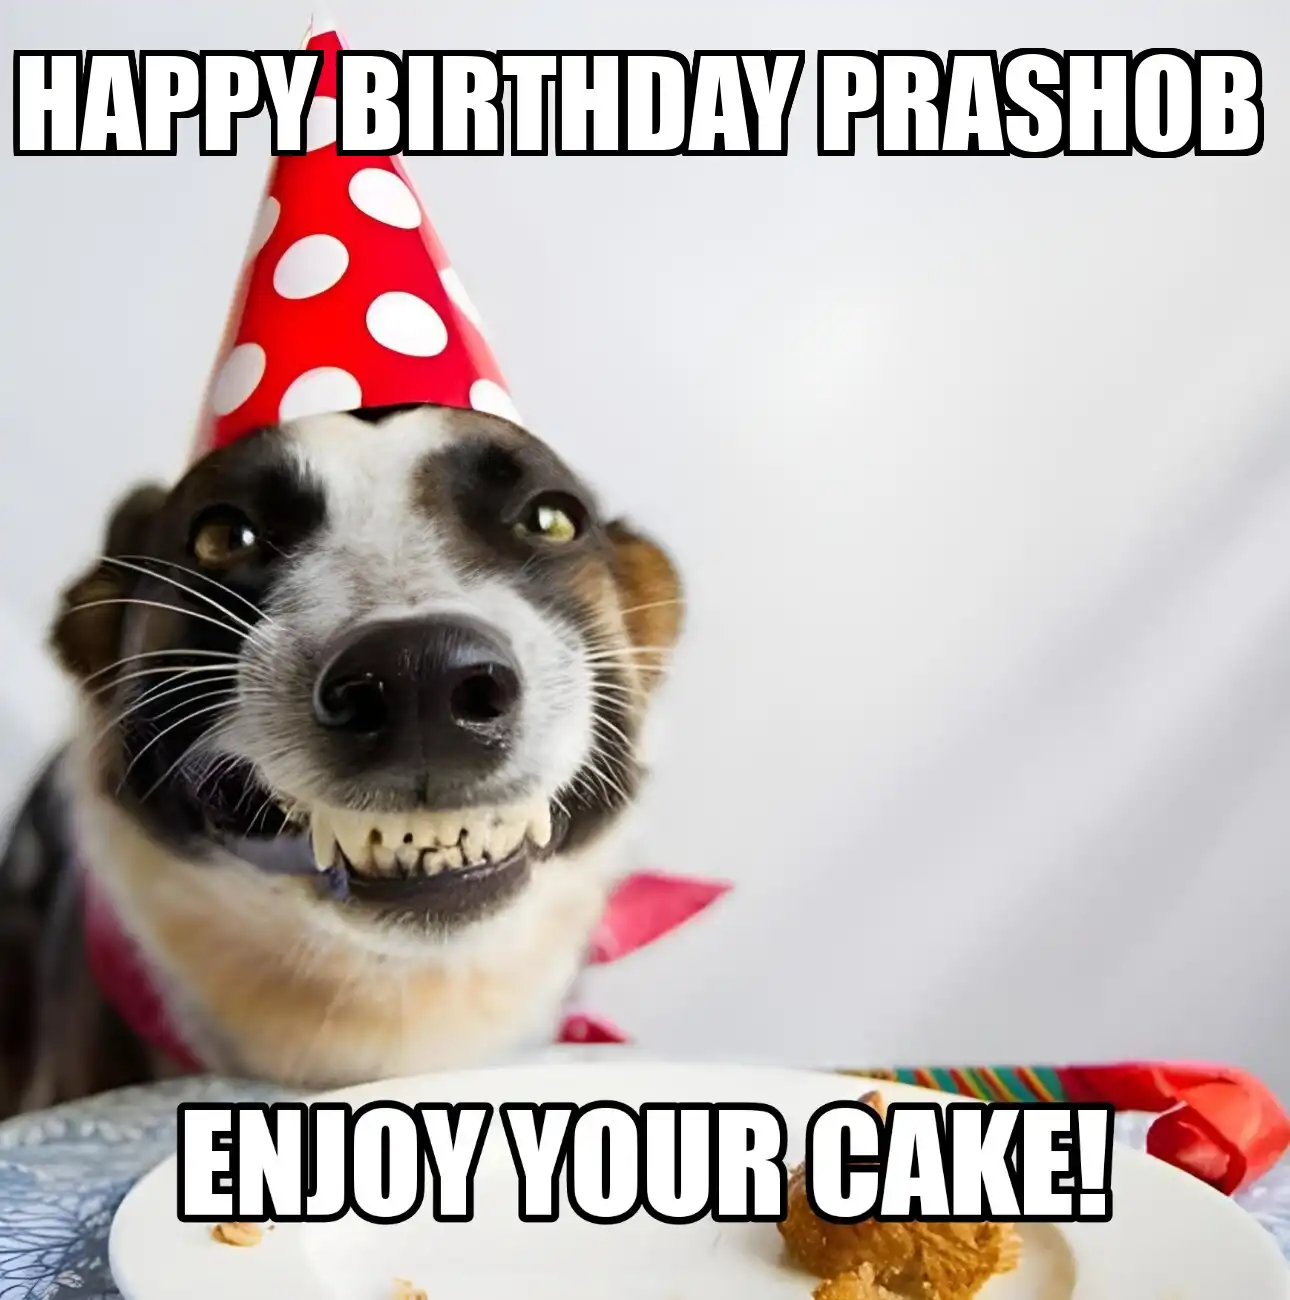 Happy Birthday Prashob Enjoy Your Cake Dog Meme